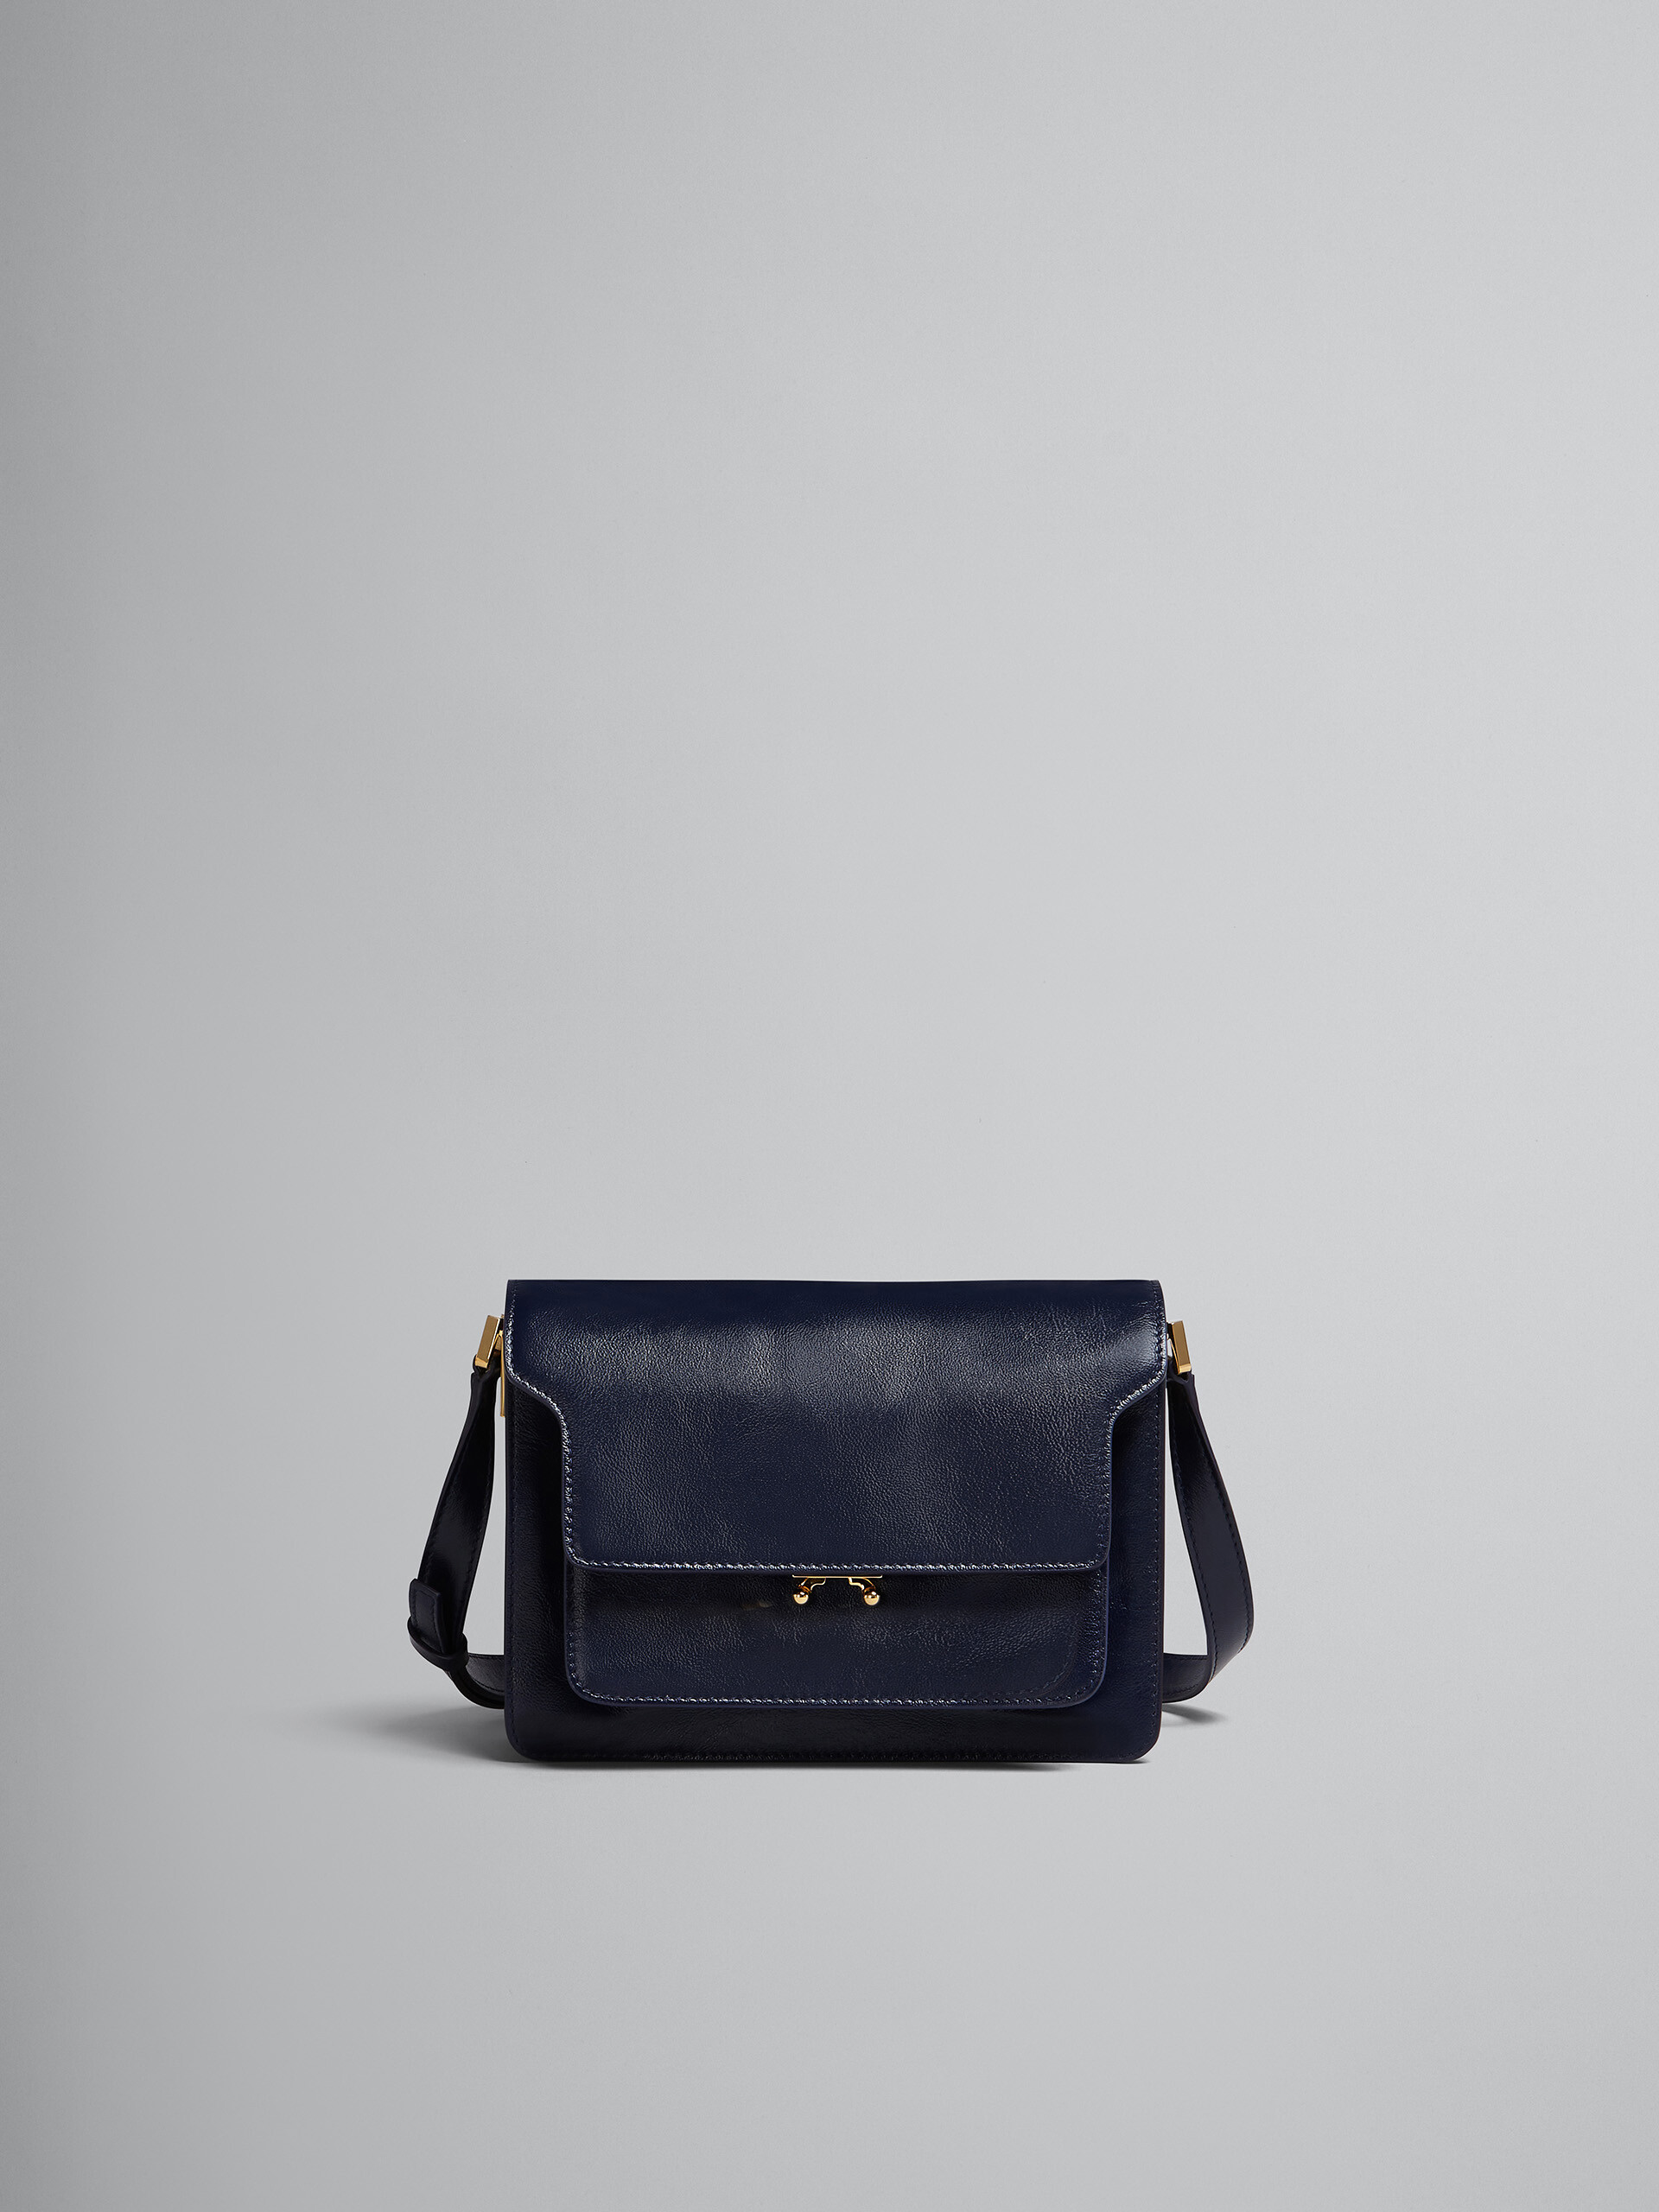 TRUNK SOFT medium bag in blue leather - Shoulder Bag - Image 1